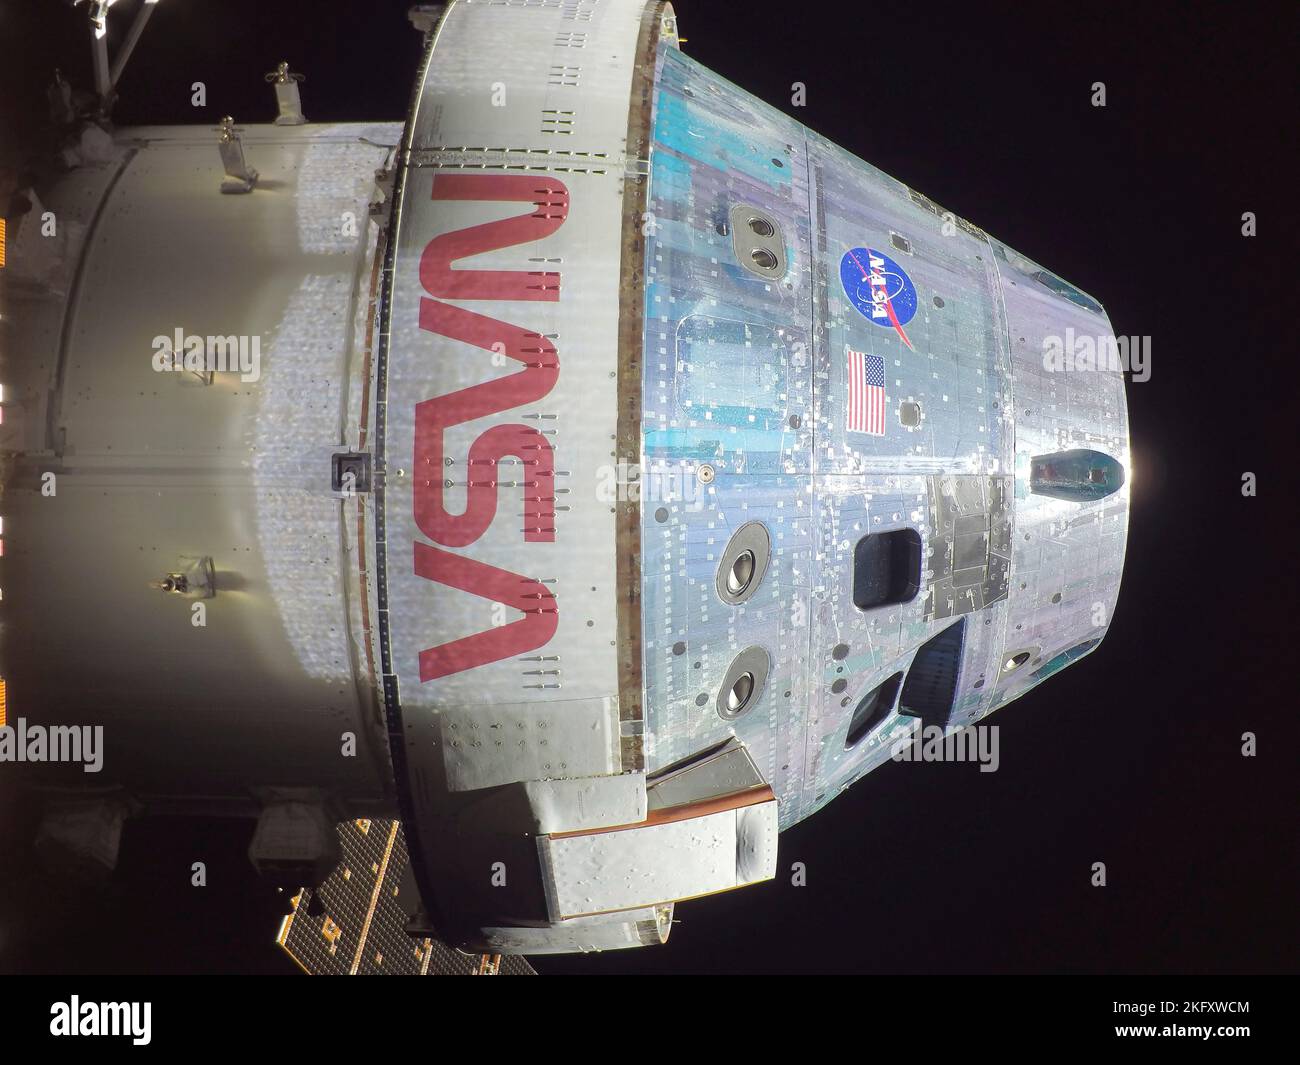 Orbite de la terre, orbite de la terre. 18 novembre 2022. Selfie de la capsule d'équipage Orion en voyage sur la lune, le troisième jour de vol de la mission Artemis I de la NASA, 18 novembre 2022, dans l'orbite terrestre. L'image a été capturée par une caméra à la pointe de l'un des panneaux solaires alors qu'elle se trouvait à 57 000 kilomètres de la Terre. Credit: NASA/NASA/Alamy Live News Banque D'Images